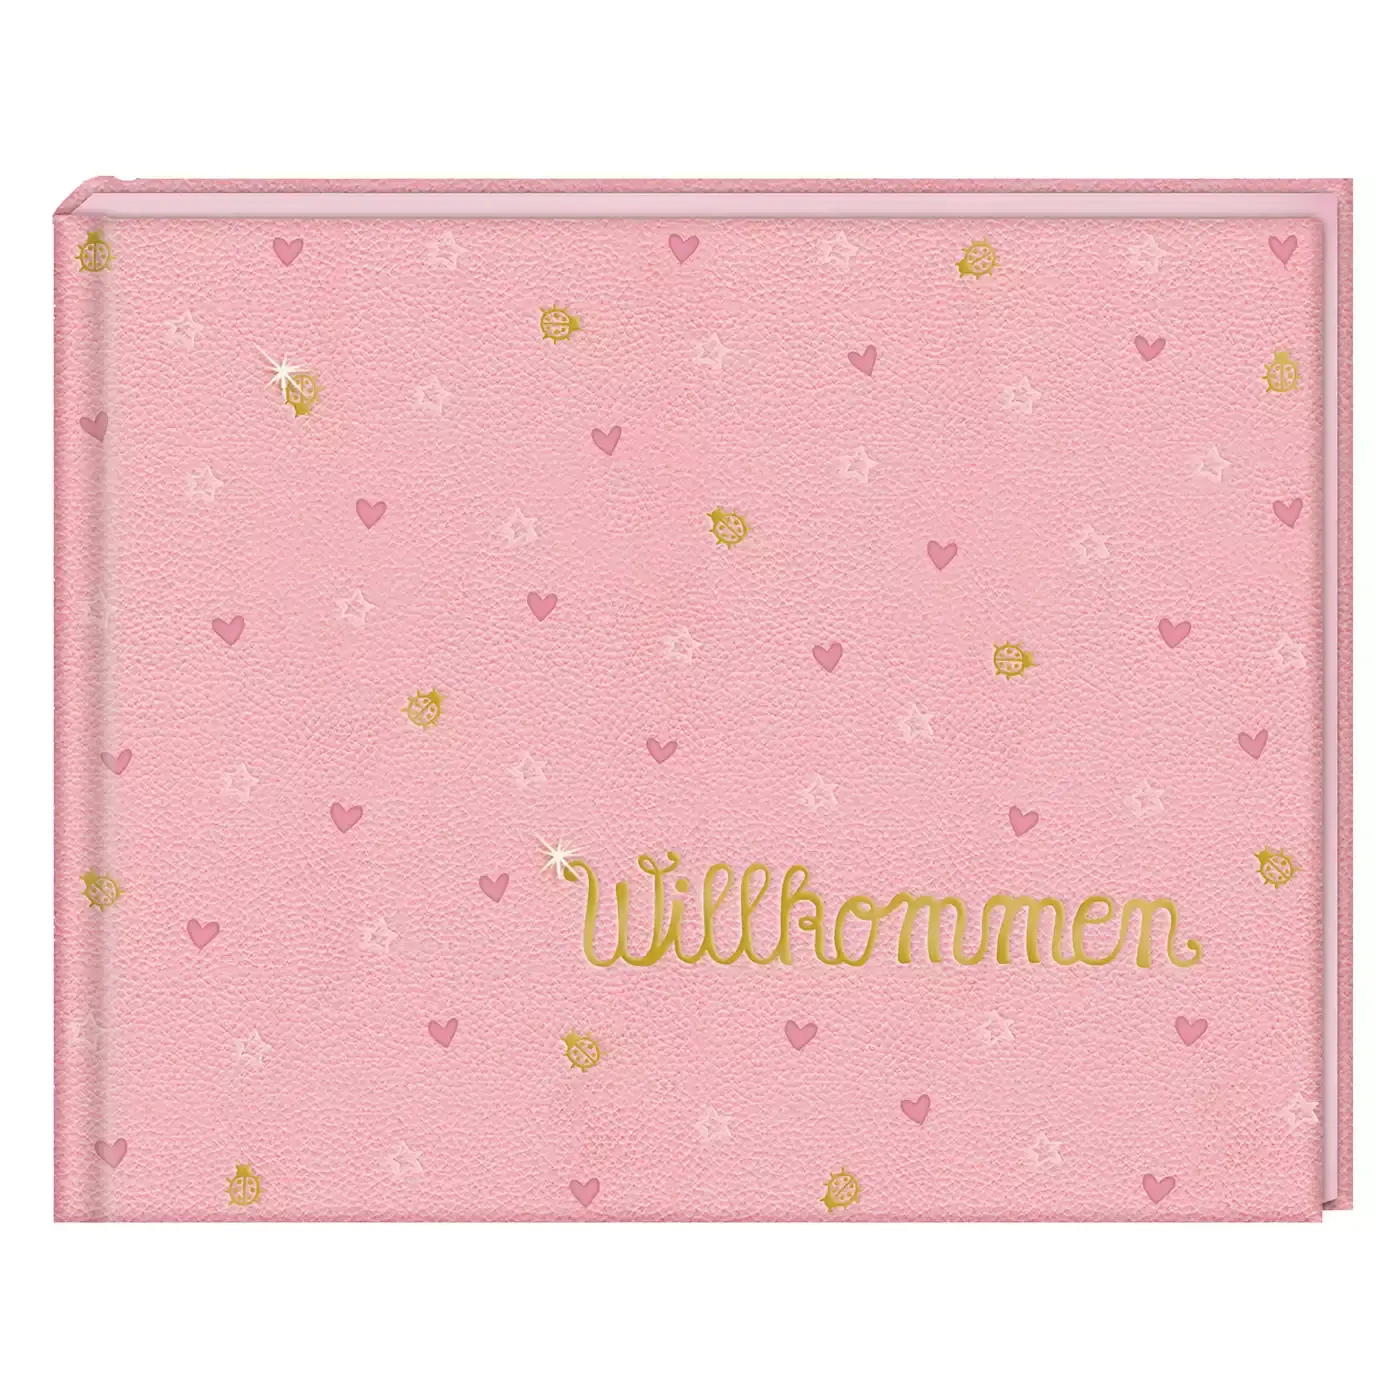 Babyalbum Willkommen BabyGlück DIE SPIEGELBURG Rosa Pink 2000576399902 1